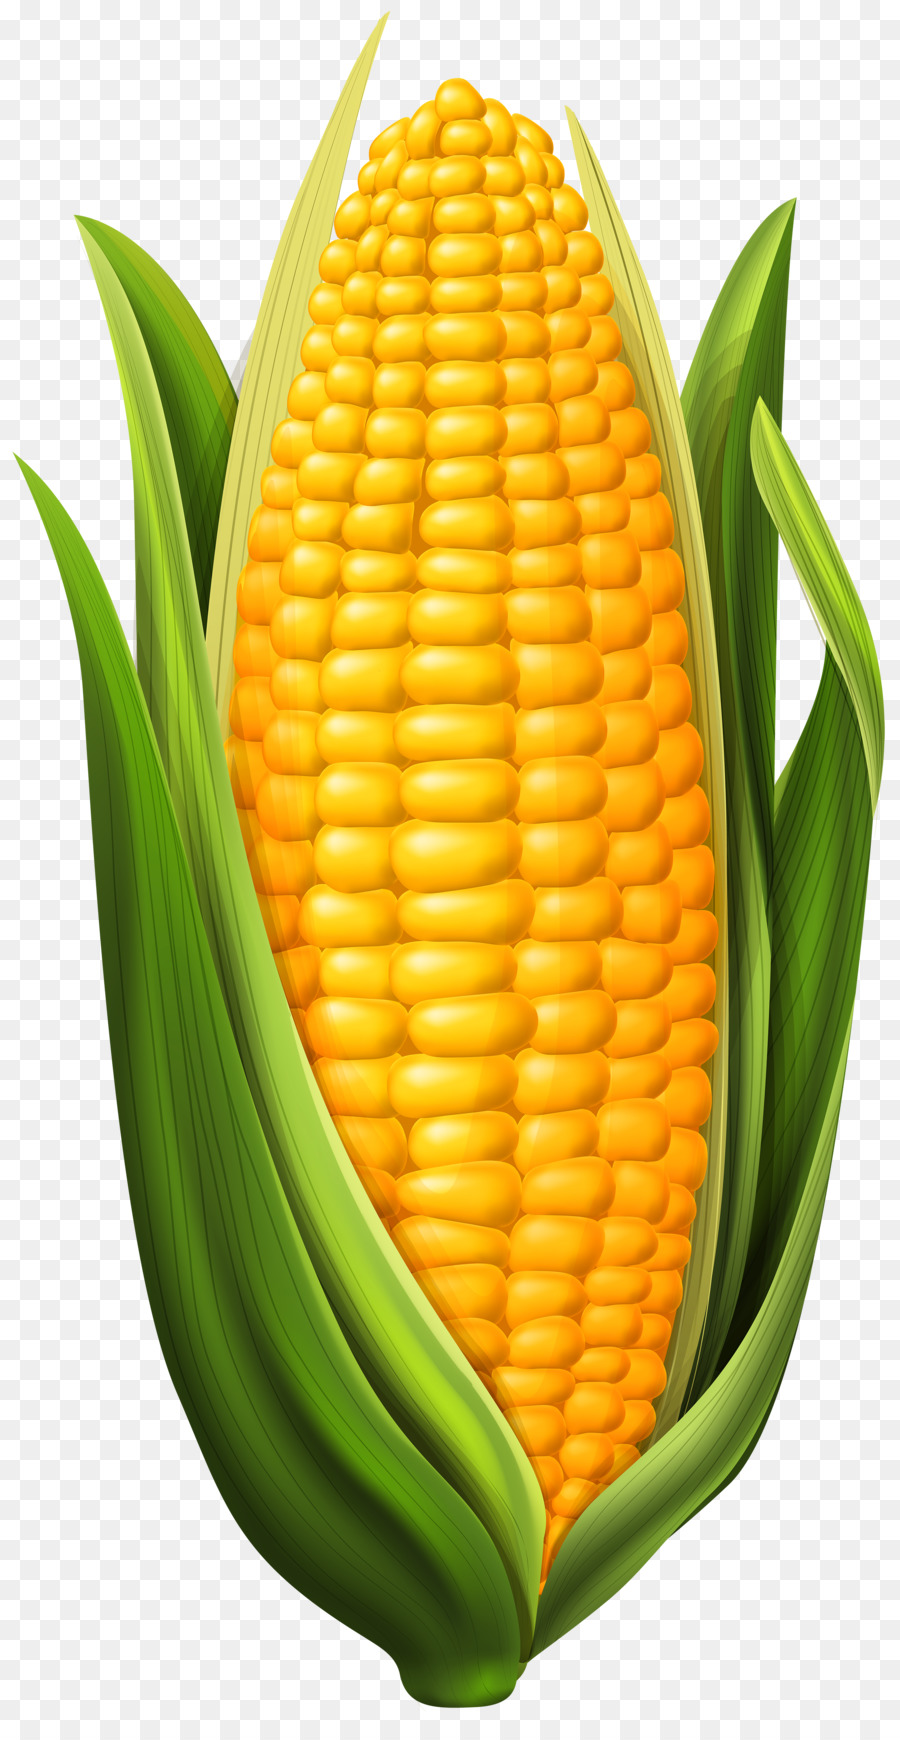 Download Corn clipart cob, Corn cob Transparent FREE for download ...